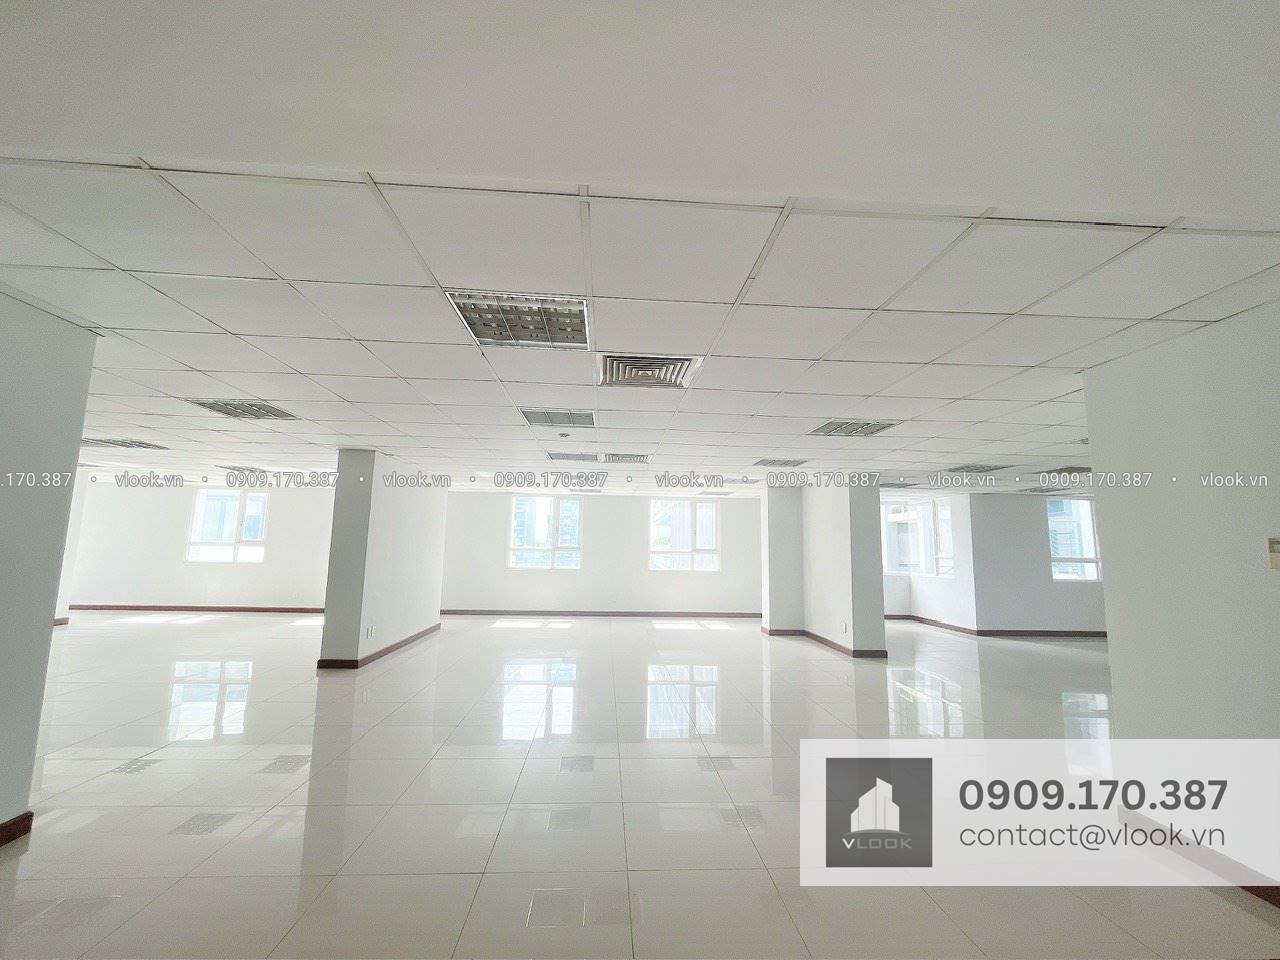 Cao ốc cho thuê văn phòng BMC Building, Võ Văn Kiệt, Quận 1 - vlook.vn